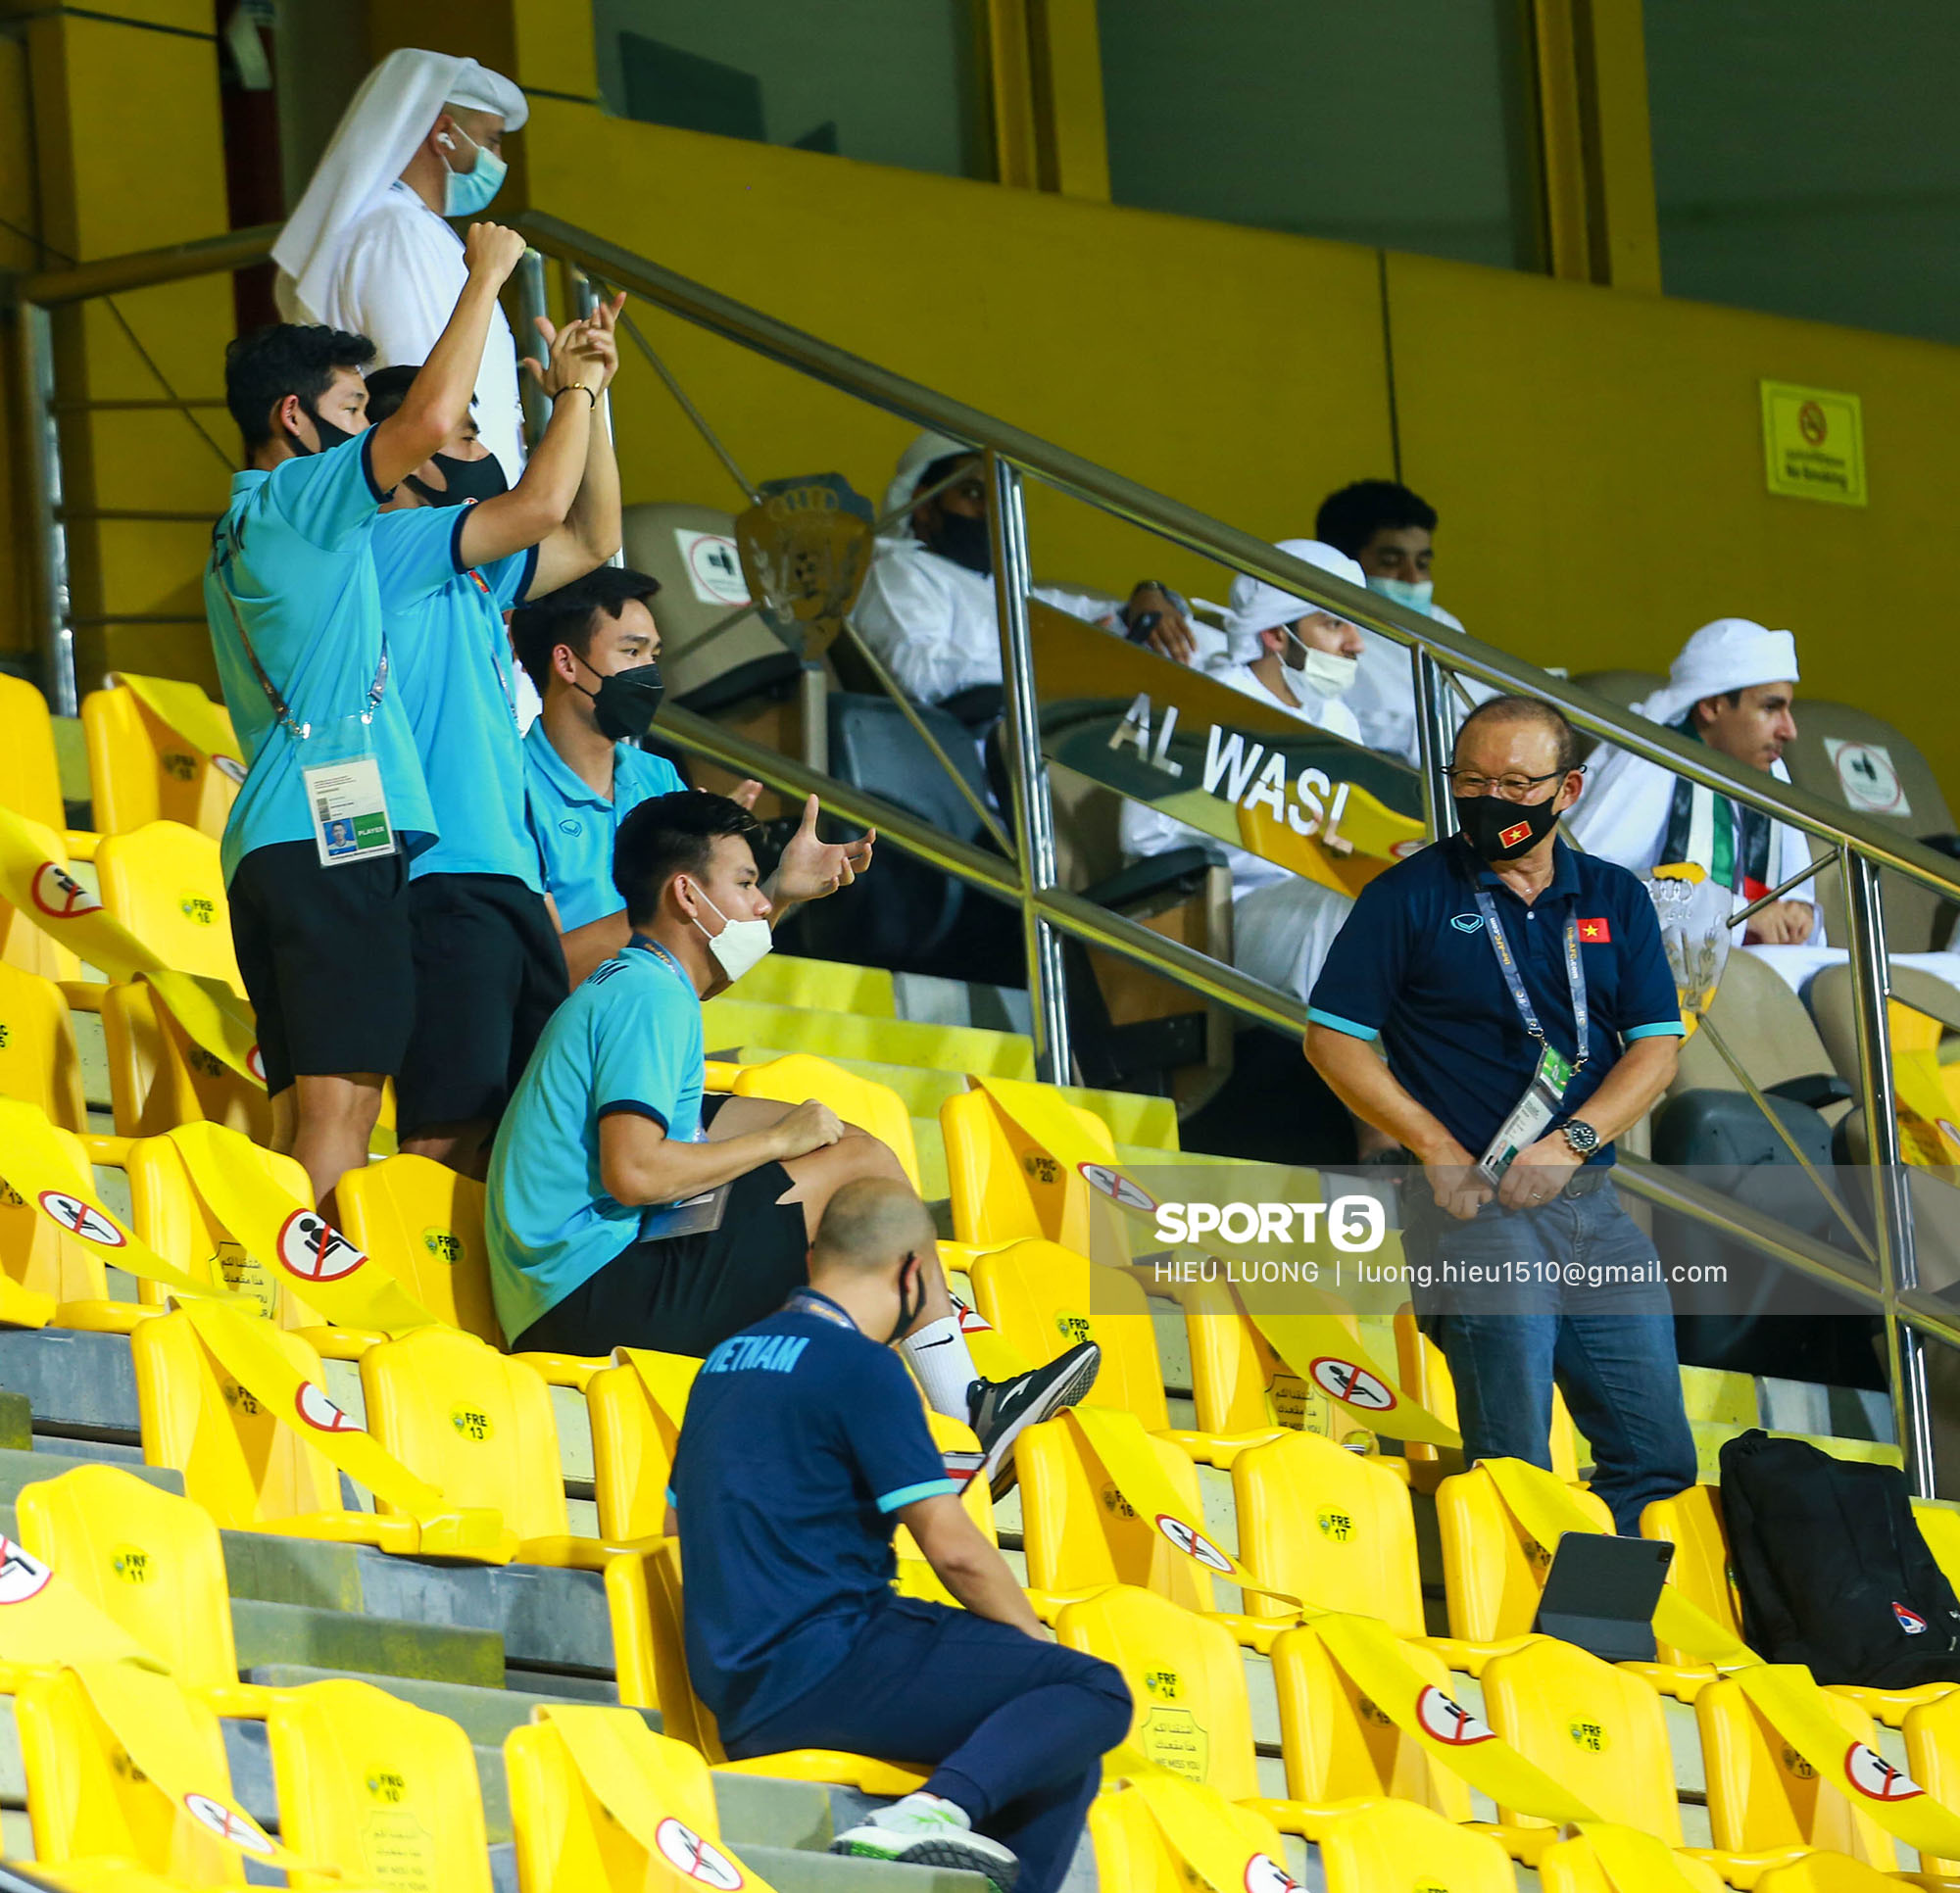 Chuyện giờ mới kể: 45 phút căng thẳng tột độ của tuyển Việt Nam trước UAE - Ảnh 2.